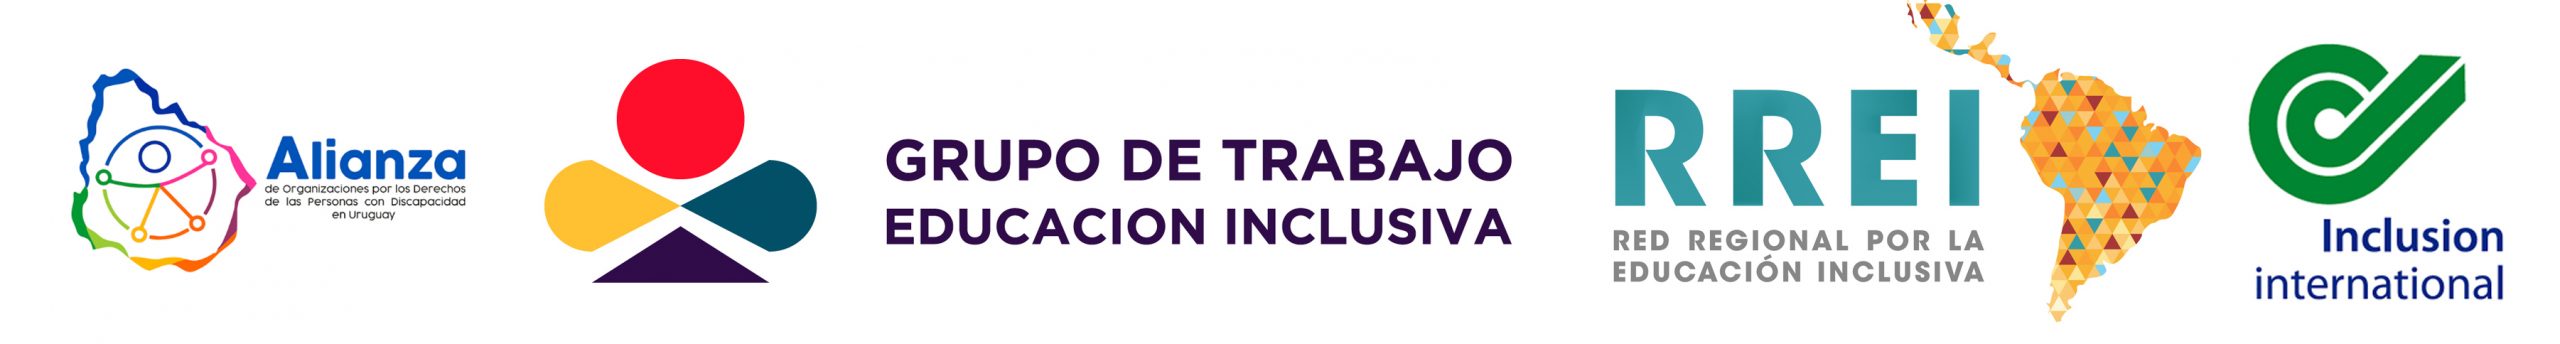 Logos de Alianza de Organizaciones por los Derechos de las Personas con Discapacidad, del Grupo de trabajo por Educacion Inclusiva, de la Red Regional por la Educacion inclusiva y de Inclusion International